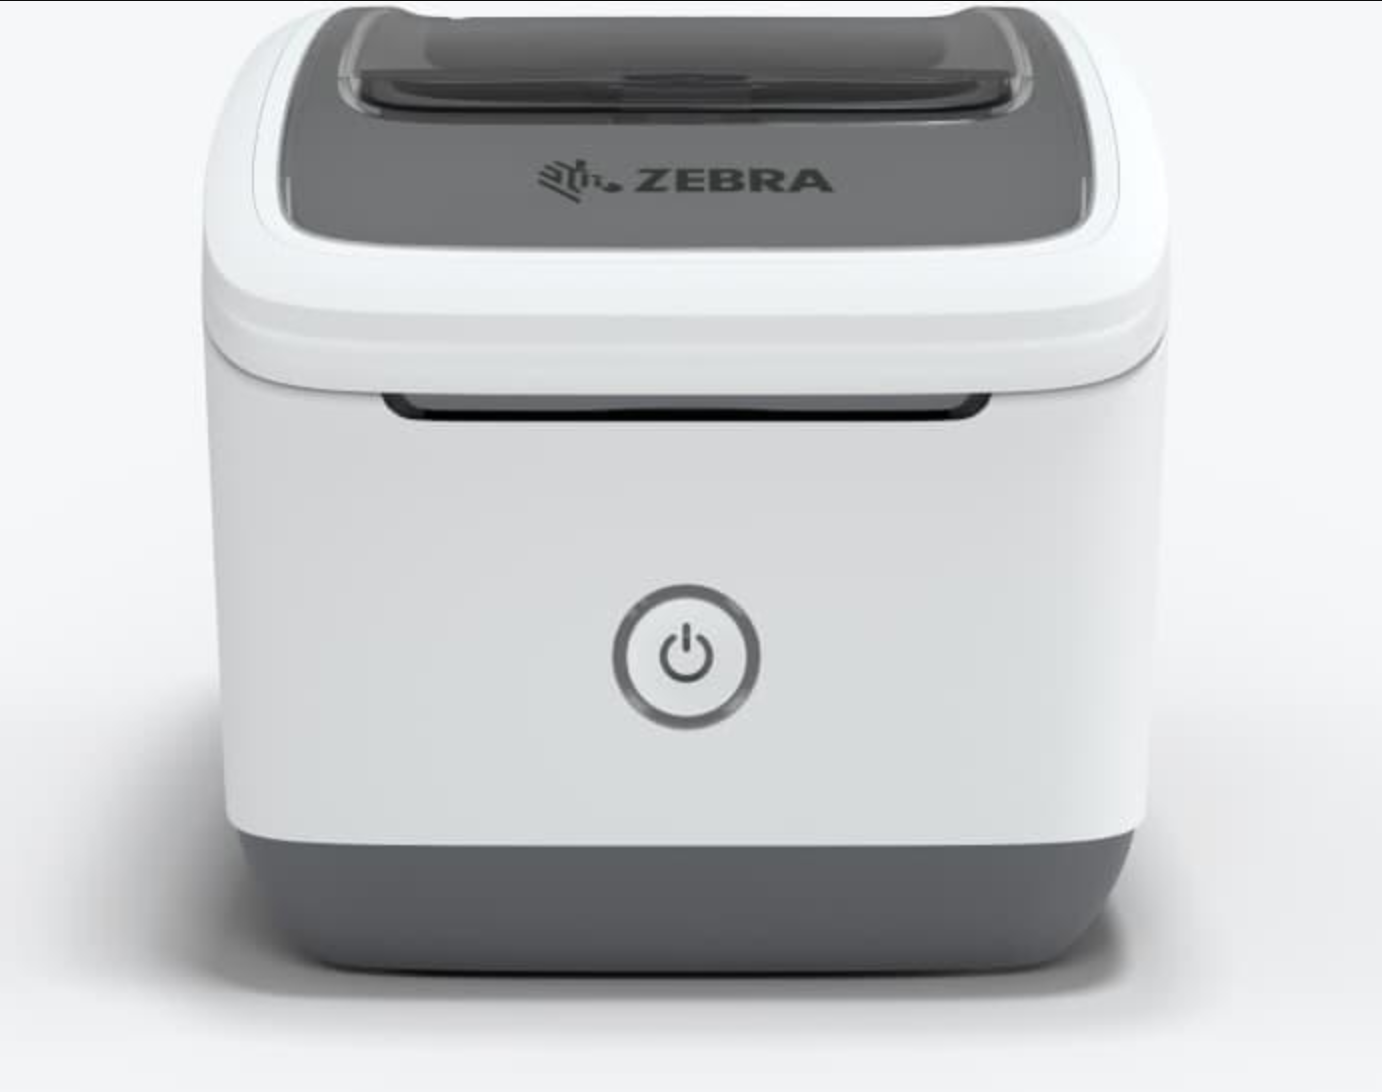 Image of Zebra wireless label printer in white